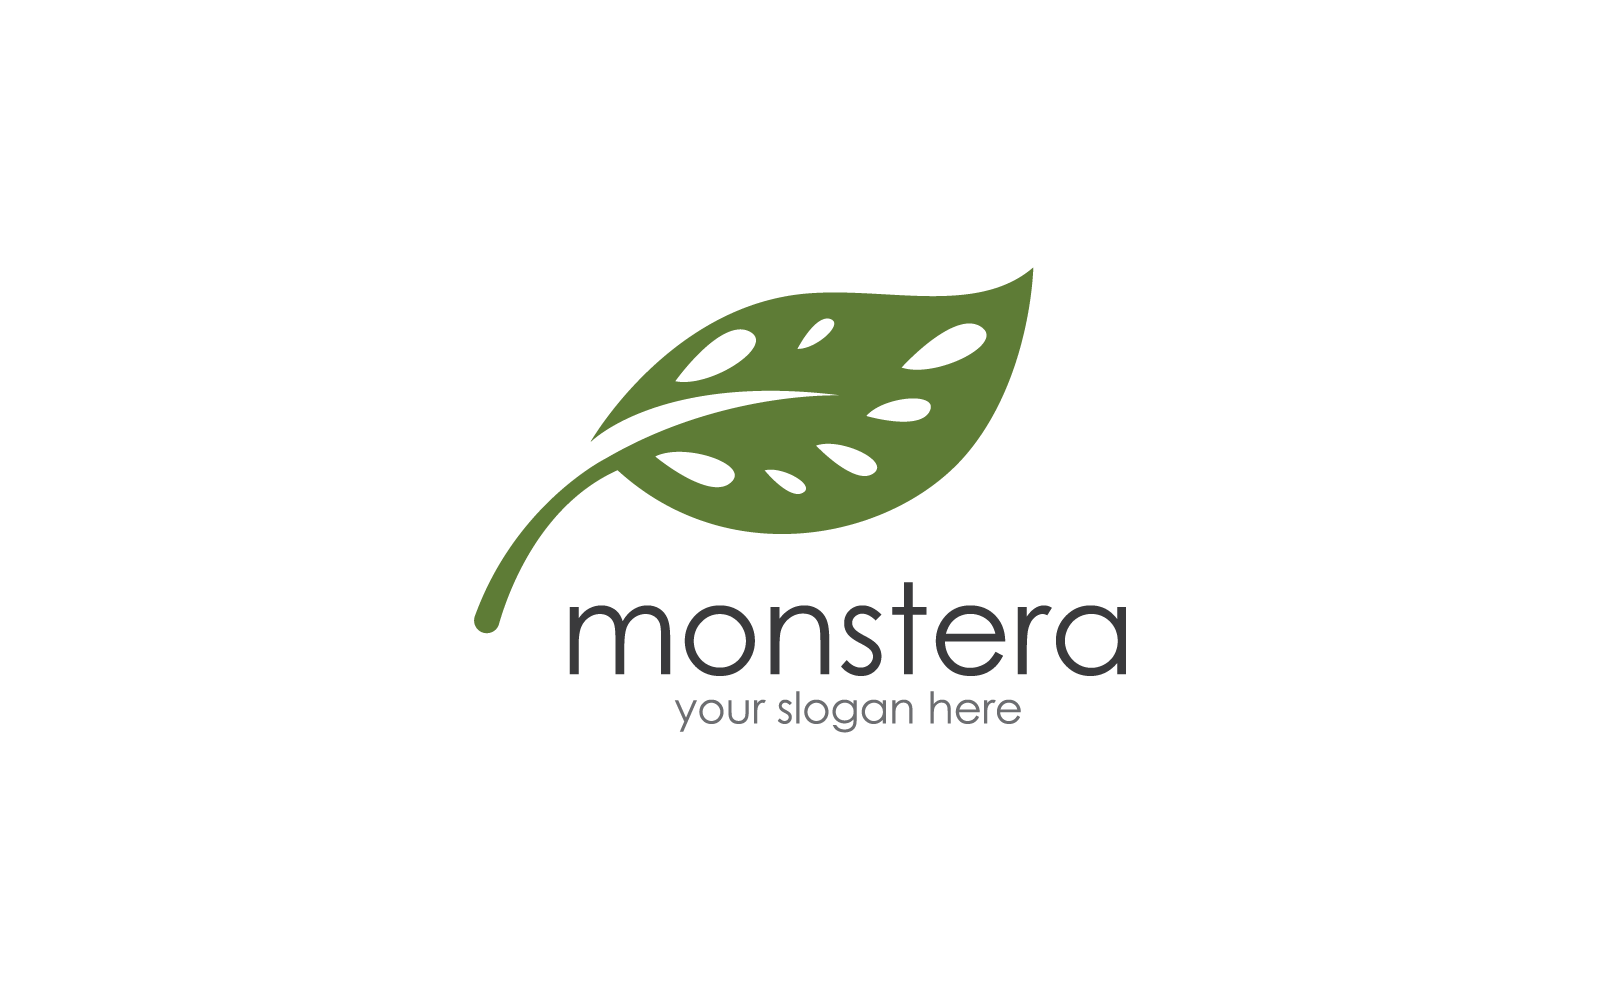 Monstera leaf logo vector flat design illustration template